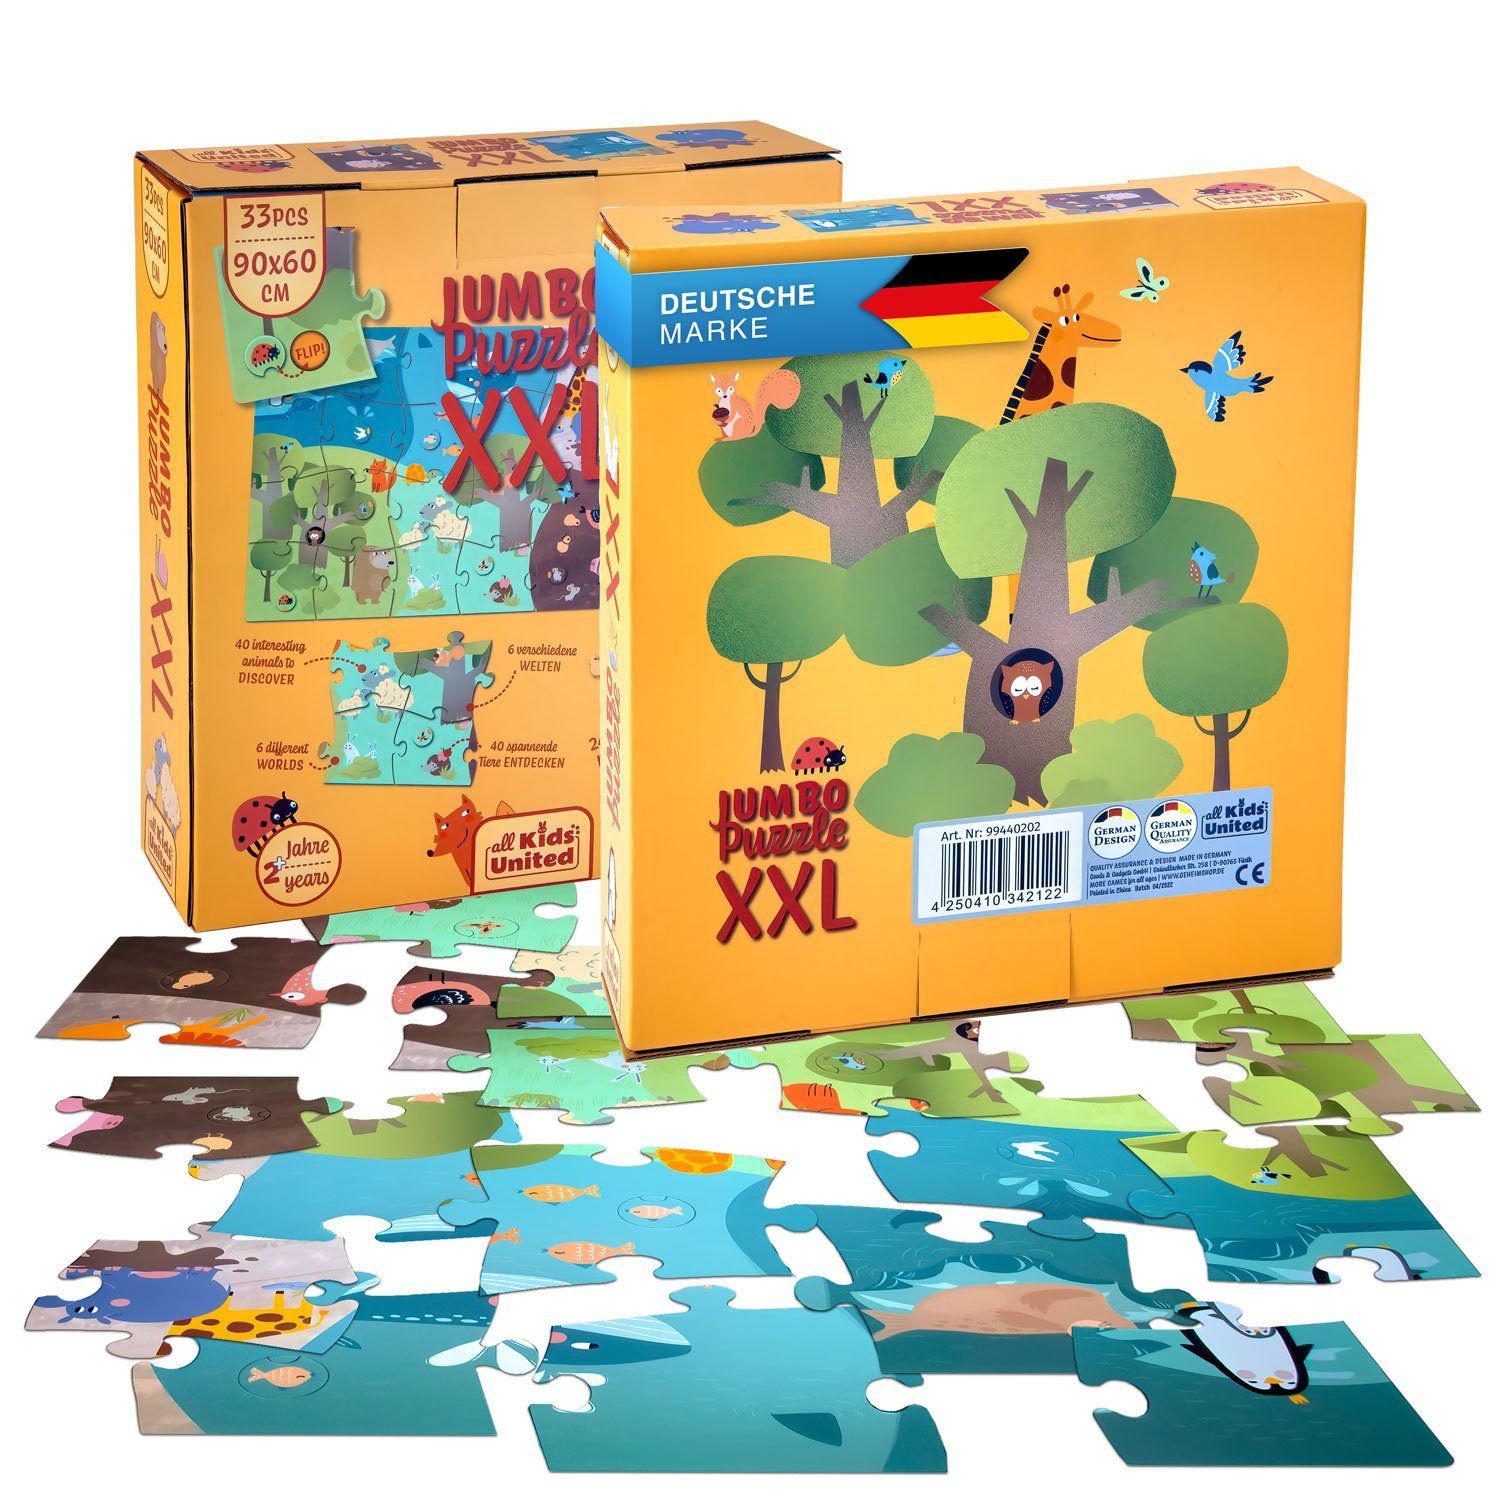 all Kids United Пазли XXL Tiere Kinder-Spielzeug, 33 Пазлиteile, mit Tieren und Landschaft